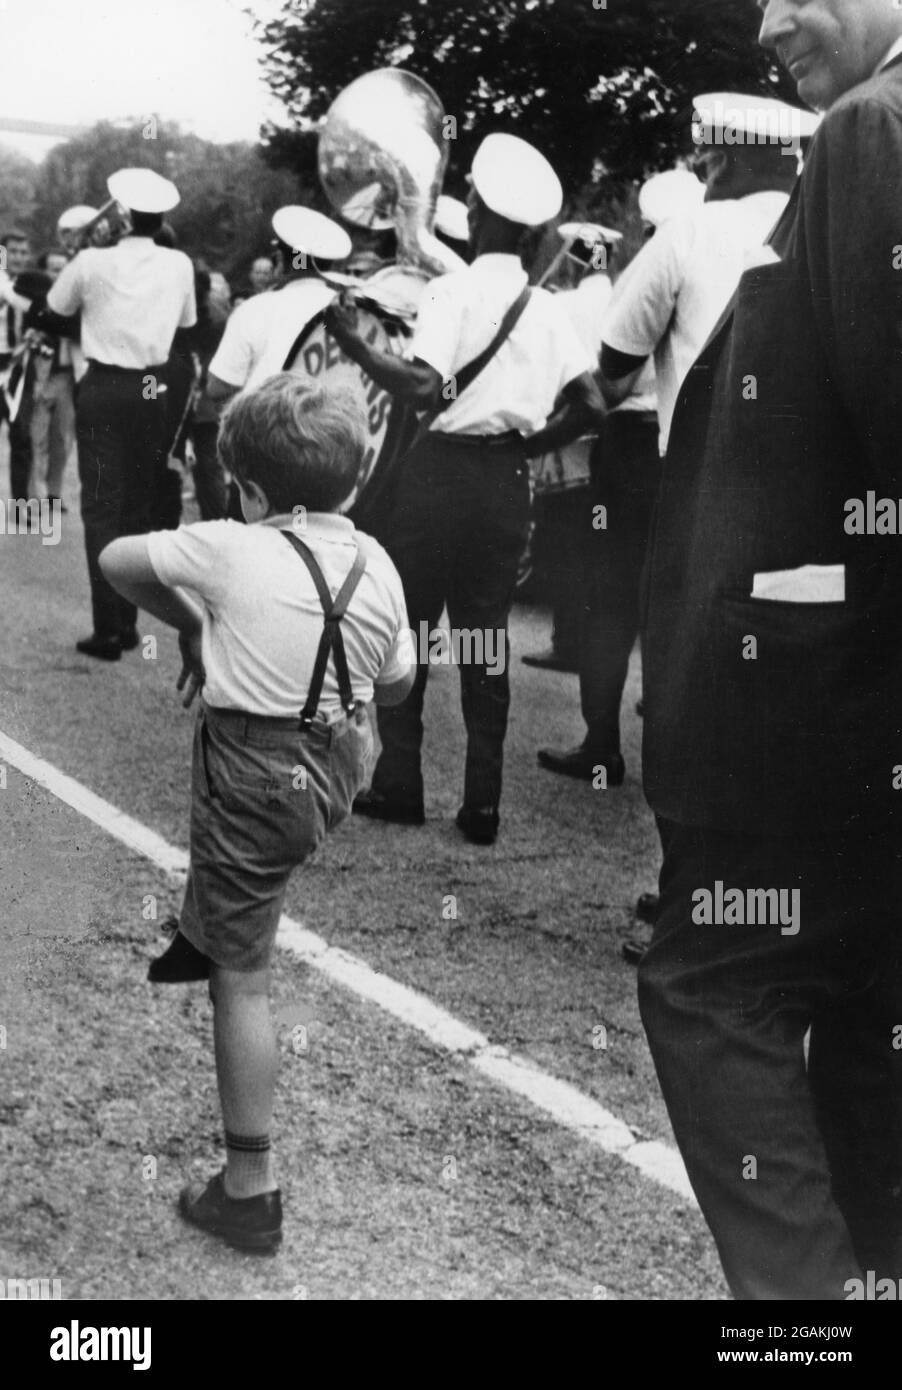 Boy marschiert enthusiastisch zusammen mit einer alten Dixieland-Marschkapelle in der Smithsonian Institution, Washington, DC, 1966. (Foto von Pfeiffer/United States Information Agency/RBM Vintage Images) Stockfoto